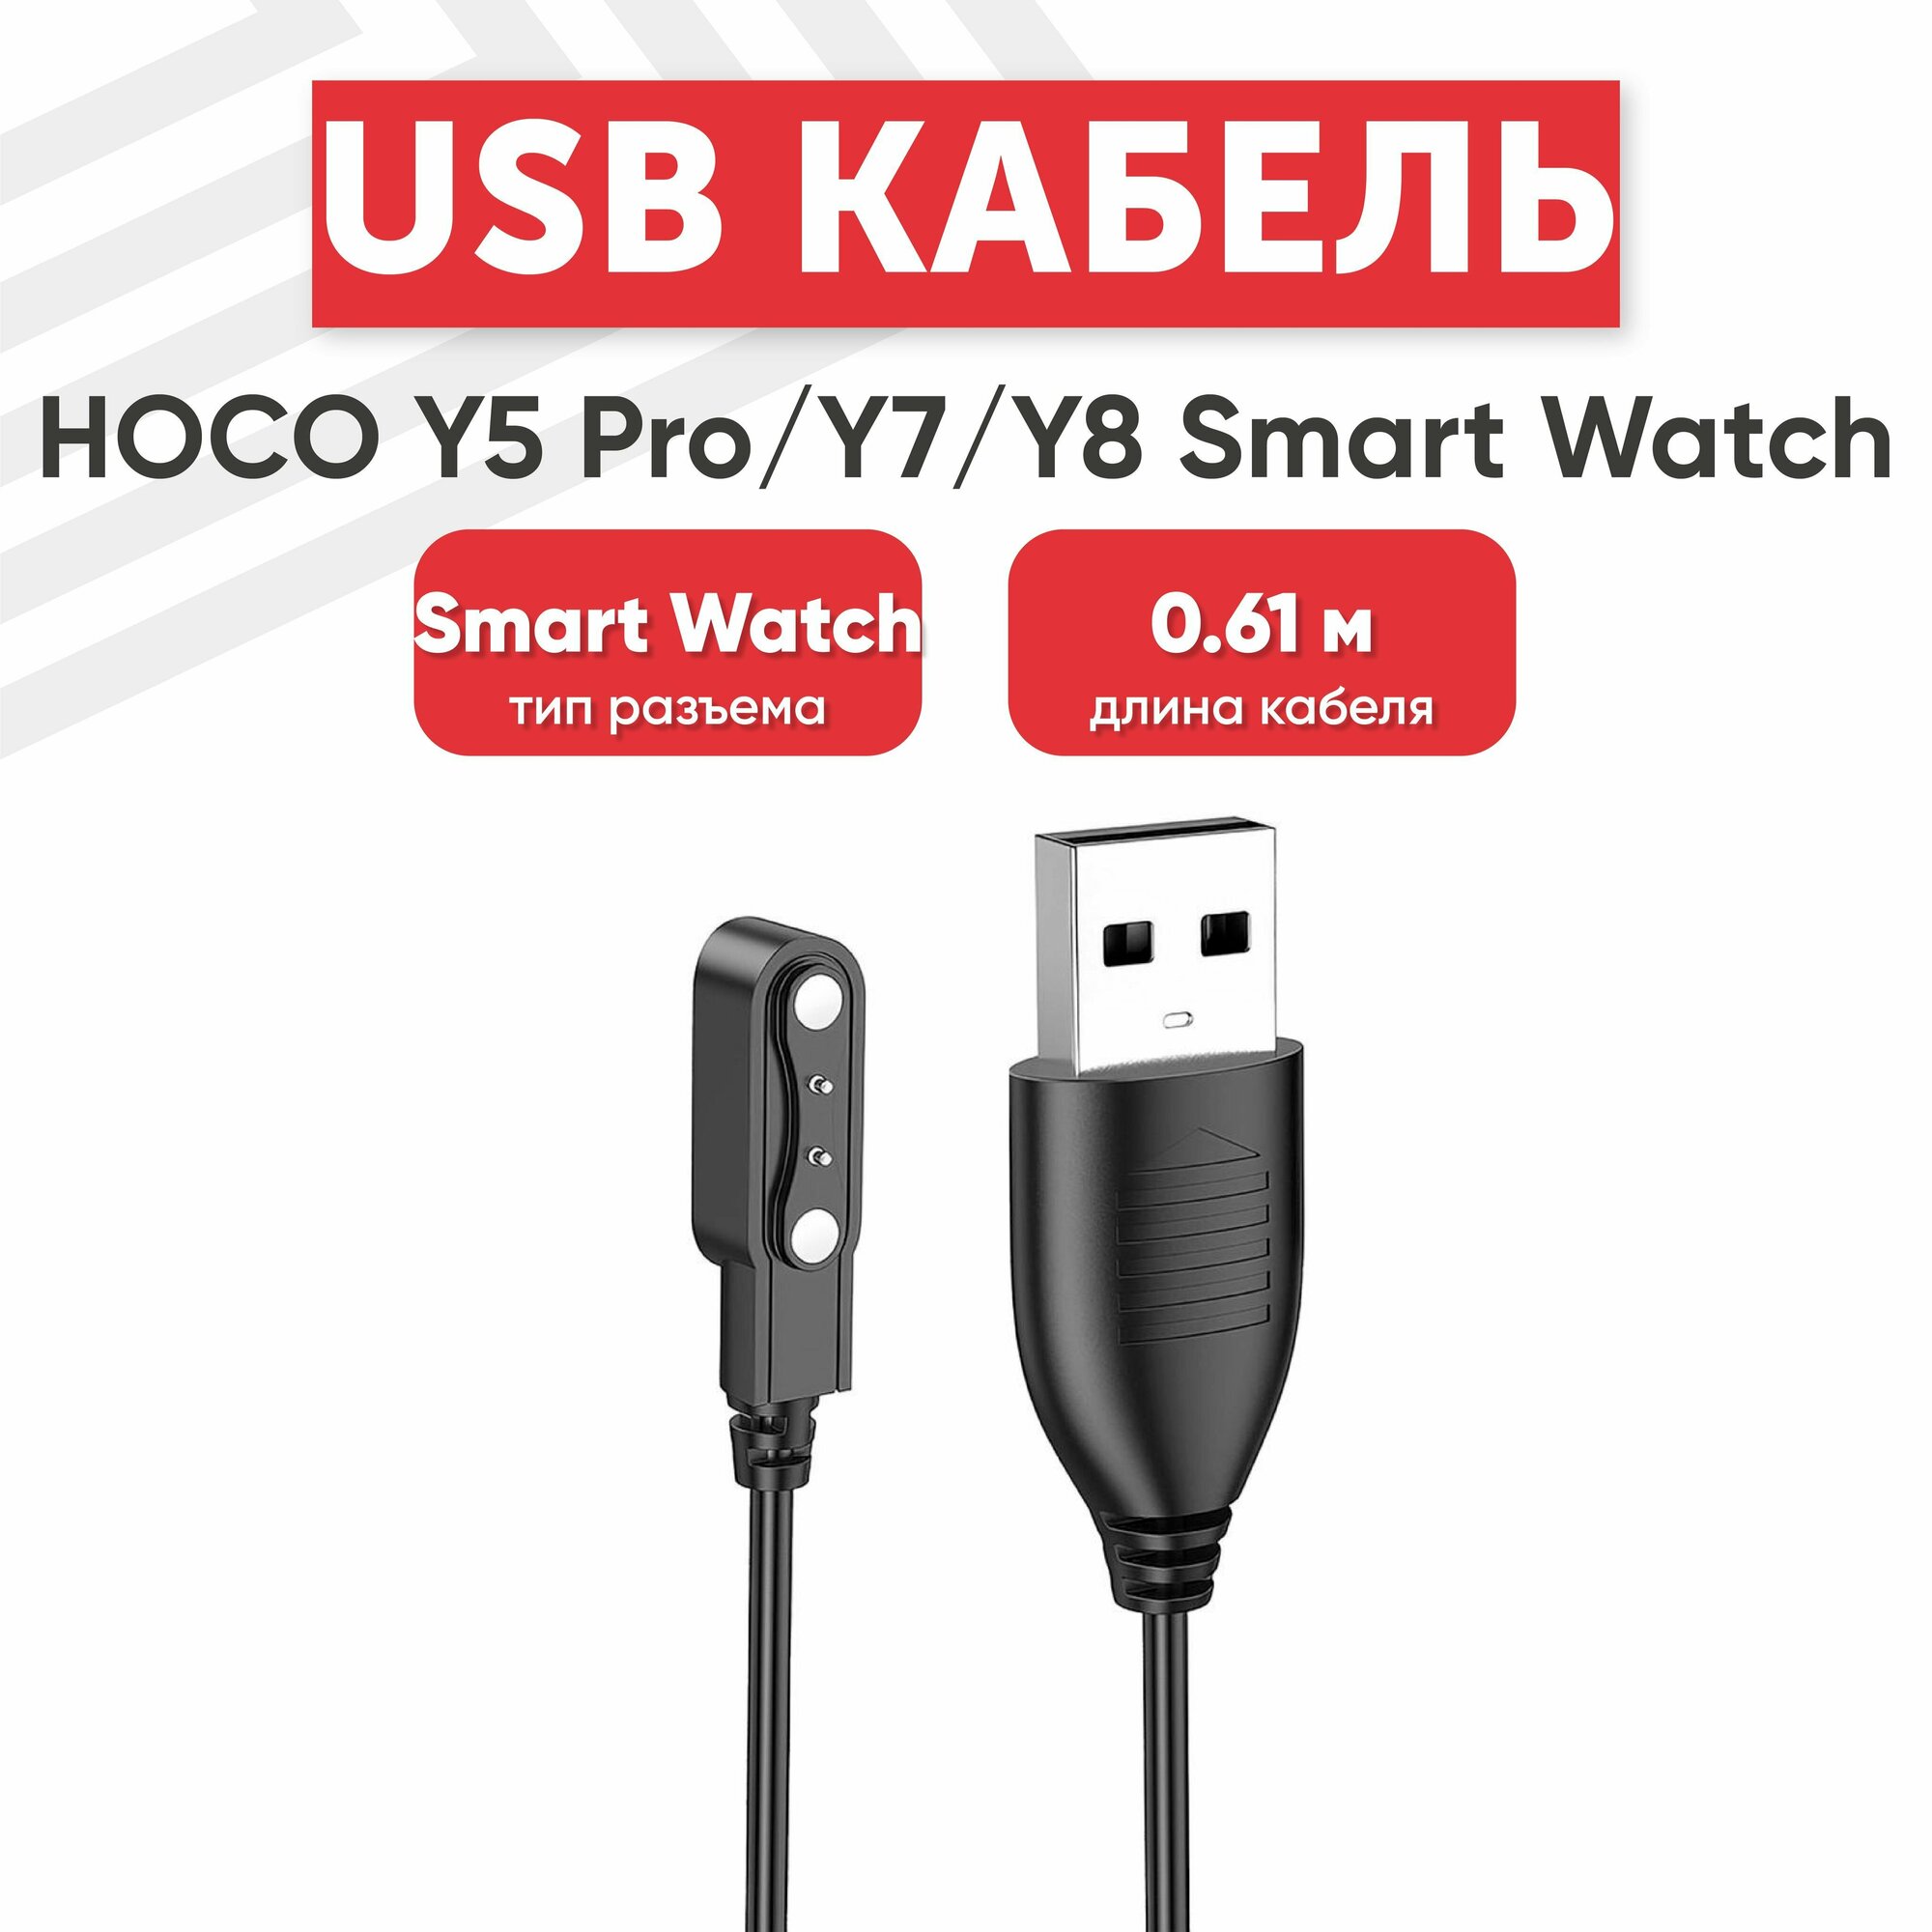 USB кабель Hoco для смарт-часов Y5 Pro, Y7, Y8, магнитный, 0.61 метра, PVC, черный